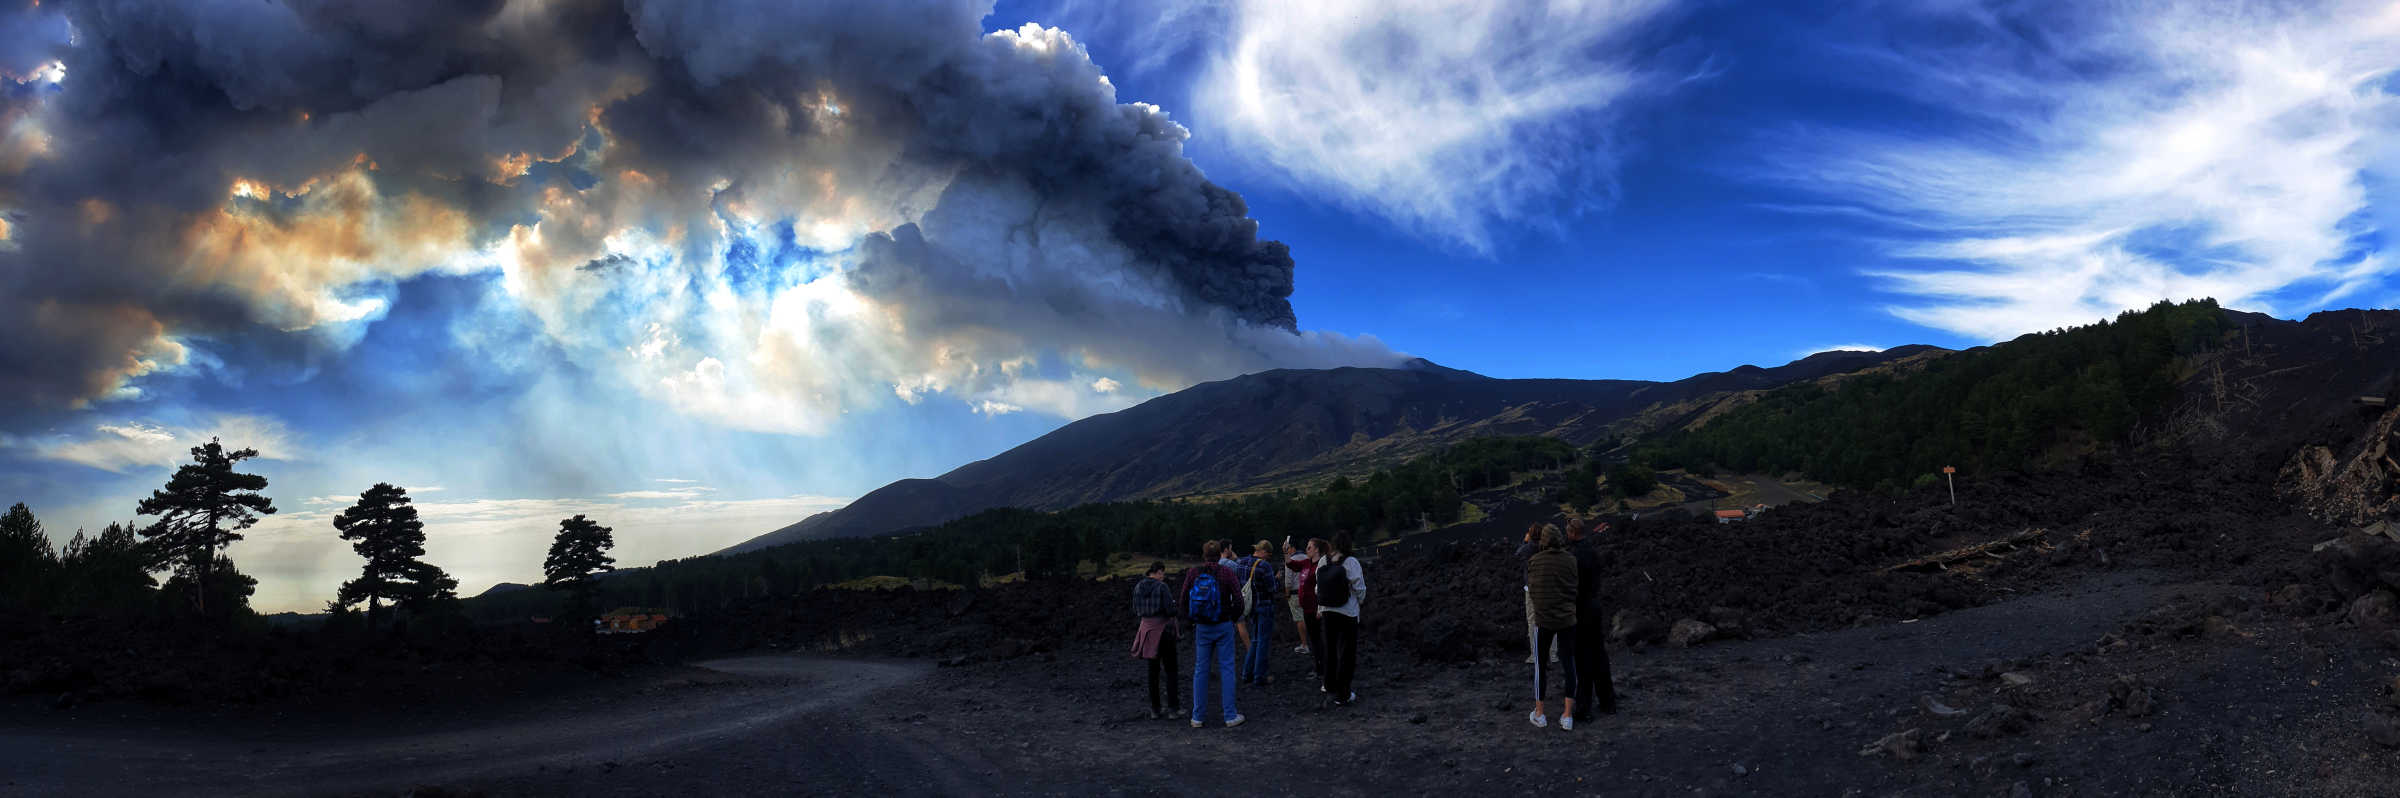 Etna Quad eruzione Piano Provenzana lava 2002